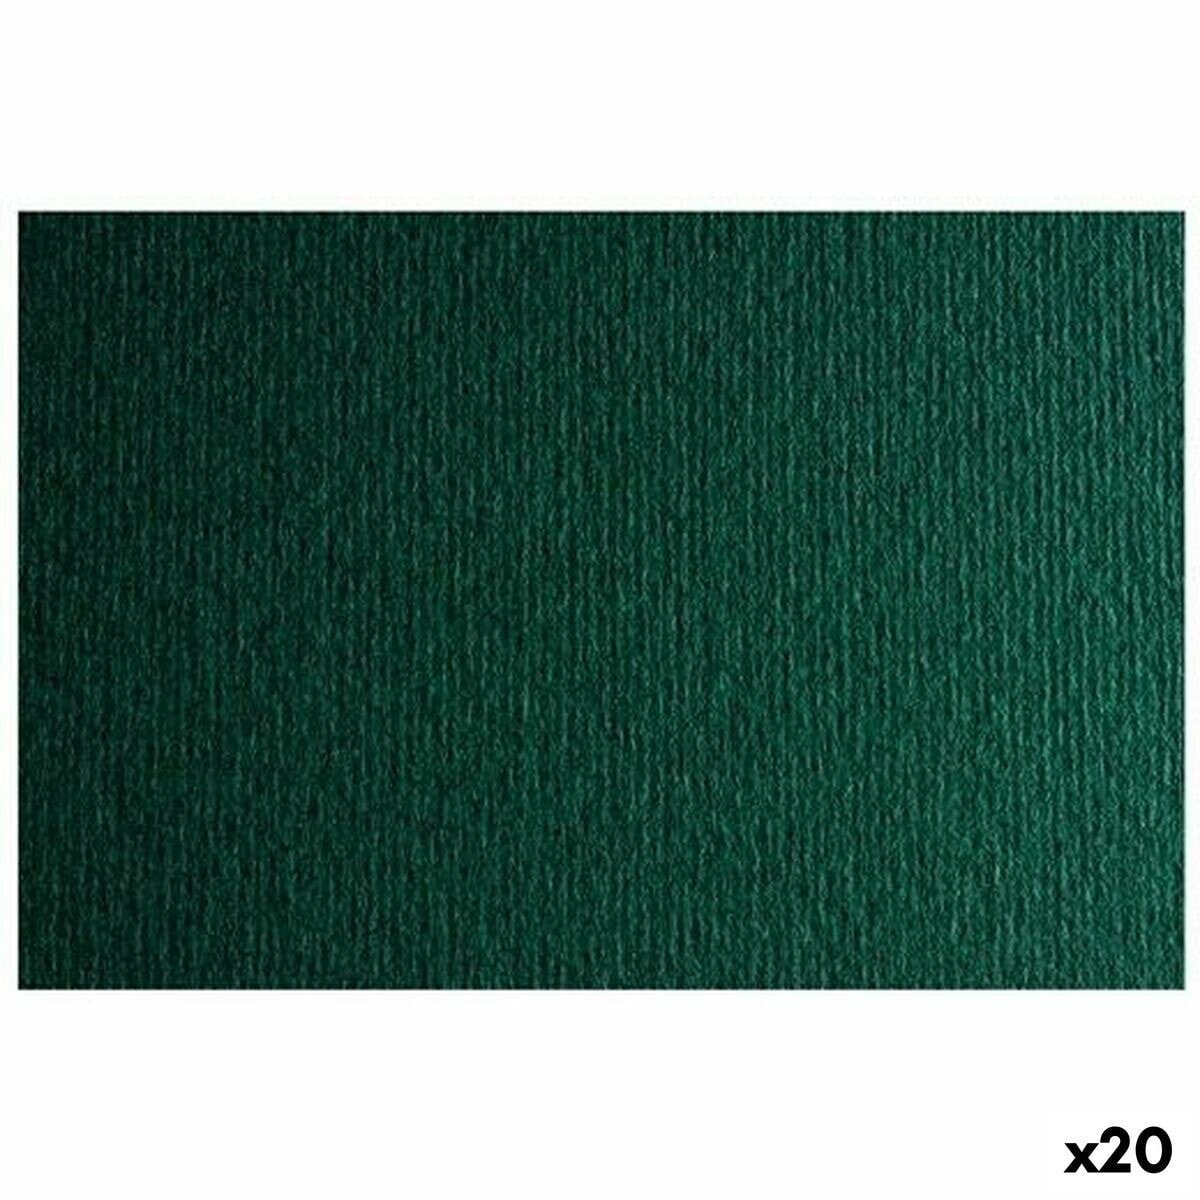 Картонная бумага Sadipal LR 220 Темно-зеленый 50 x 70 cm (20 штук)